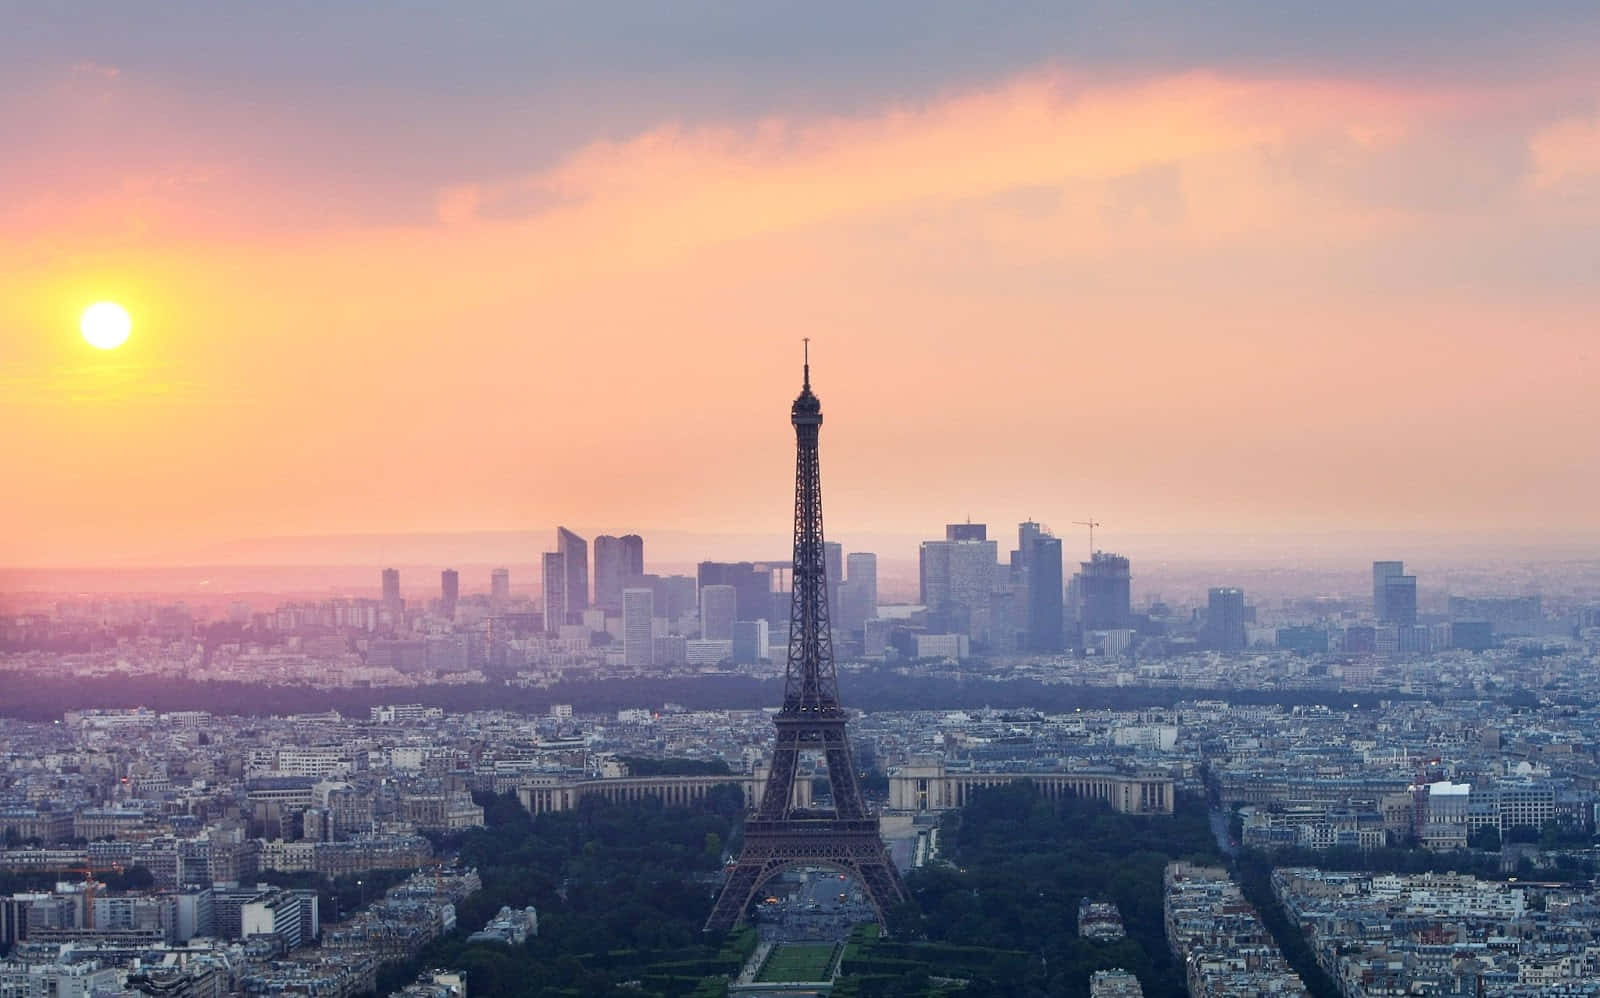 Franskeiffeltårn I Solnedgangsbillede I Paris.